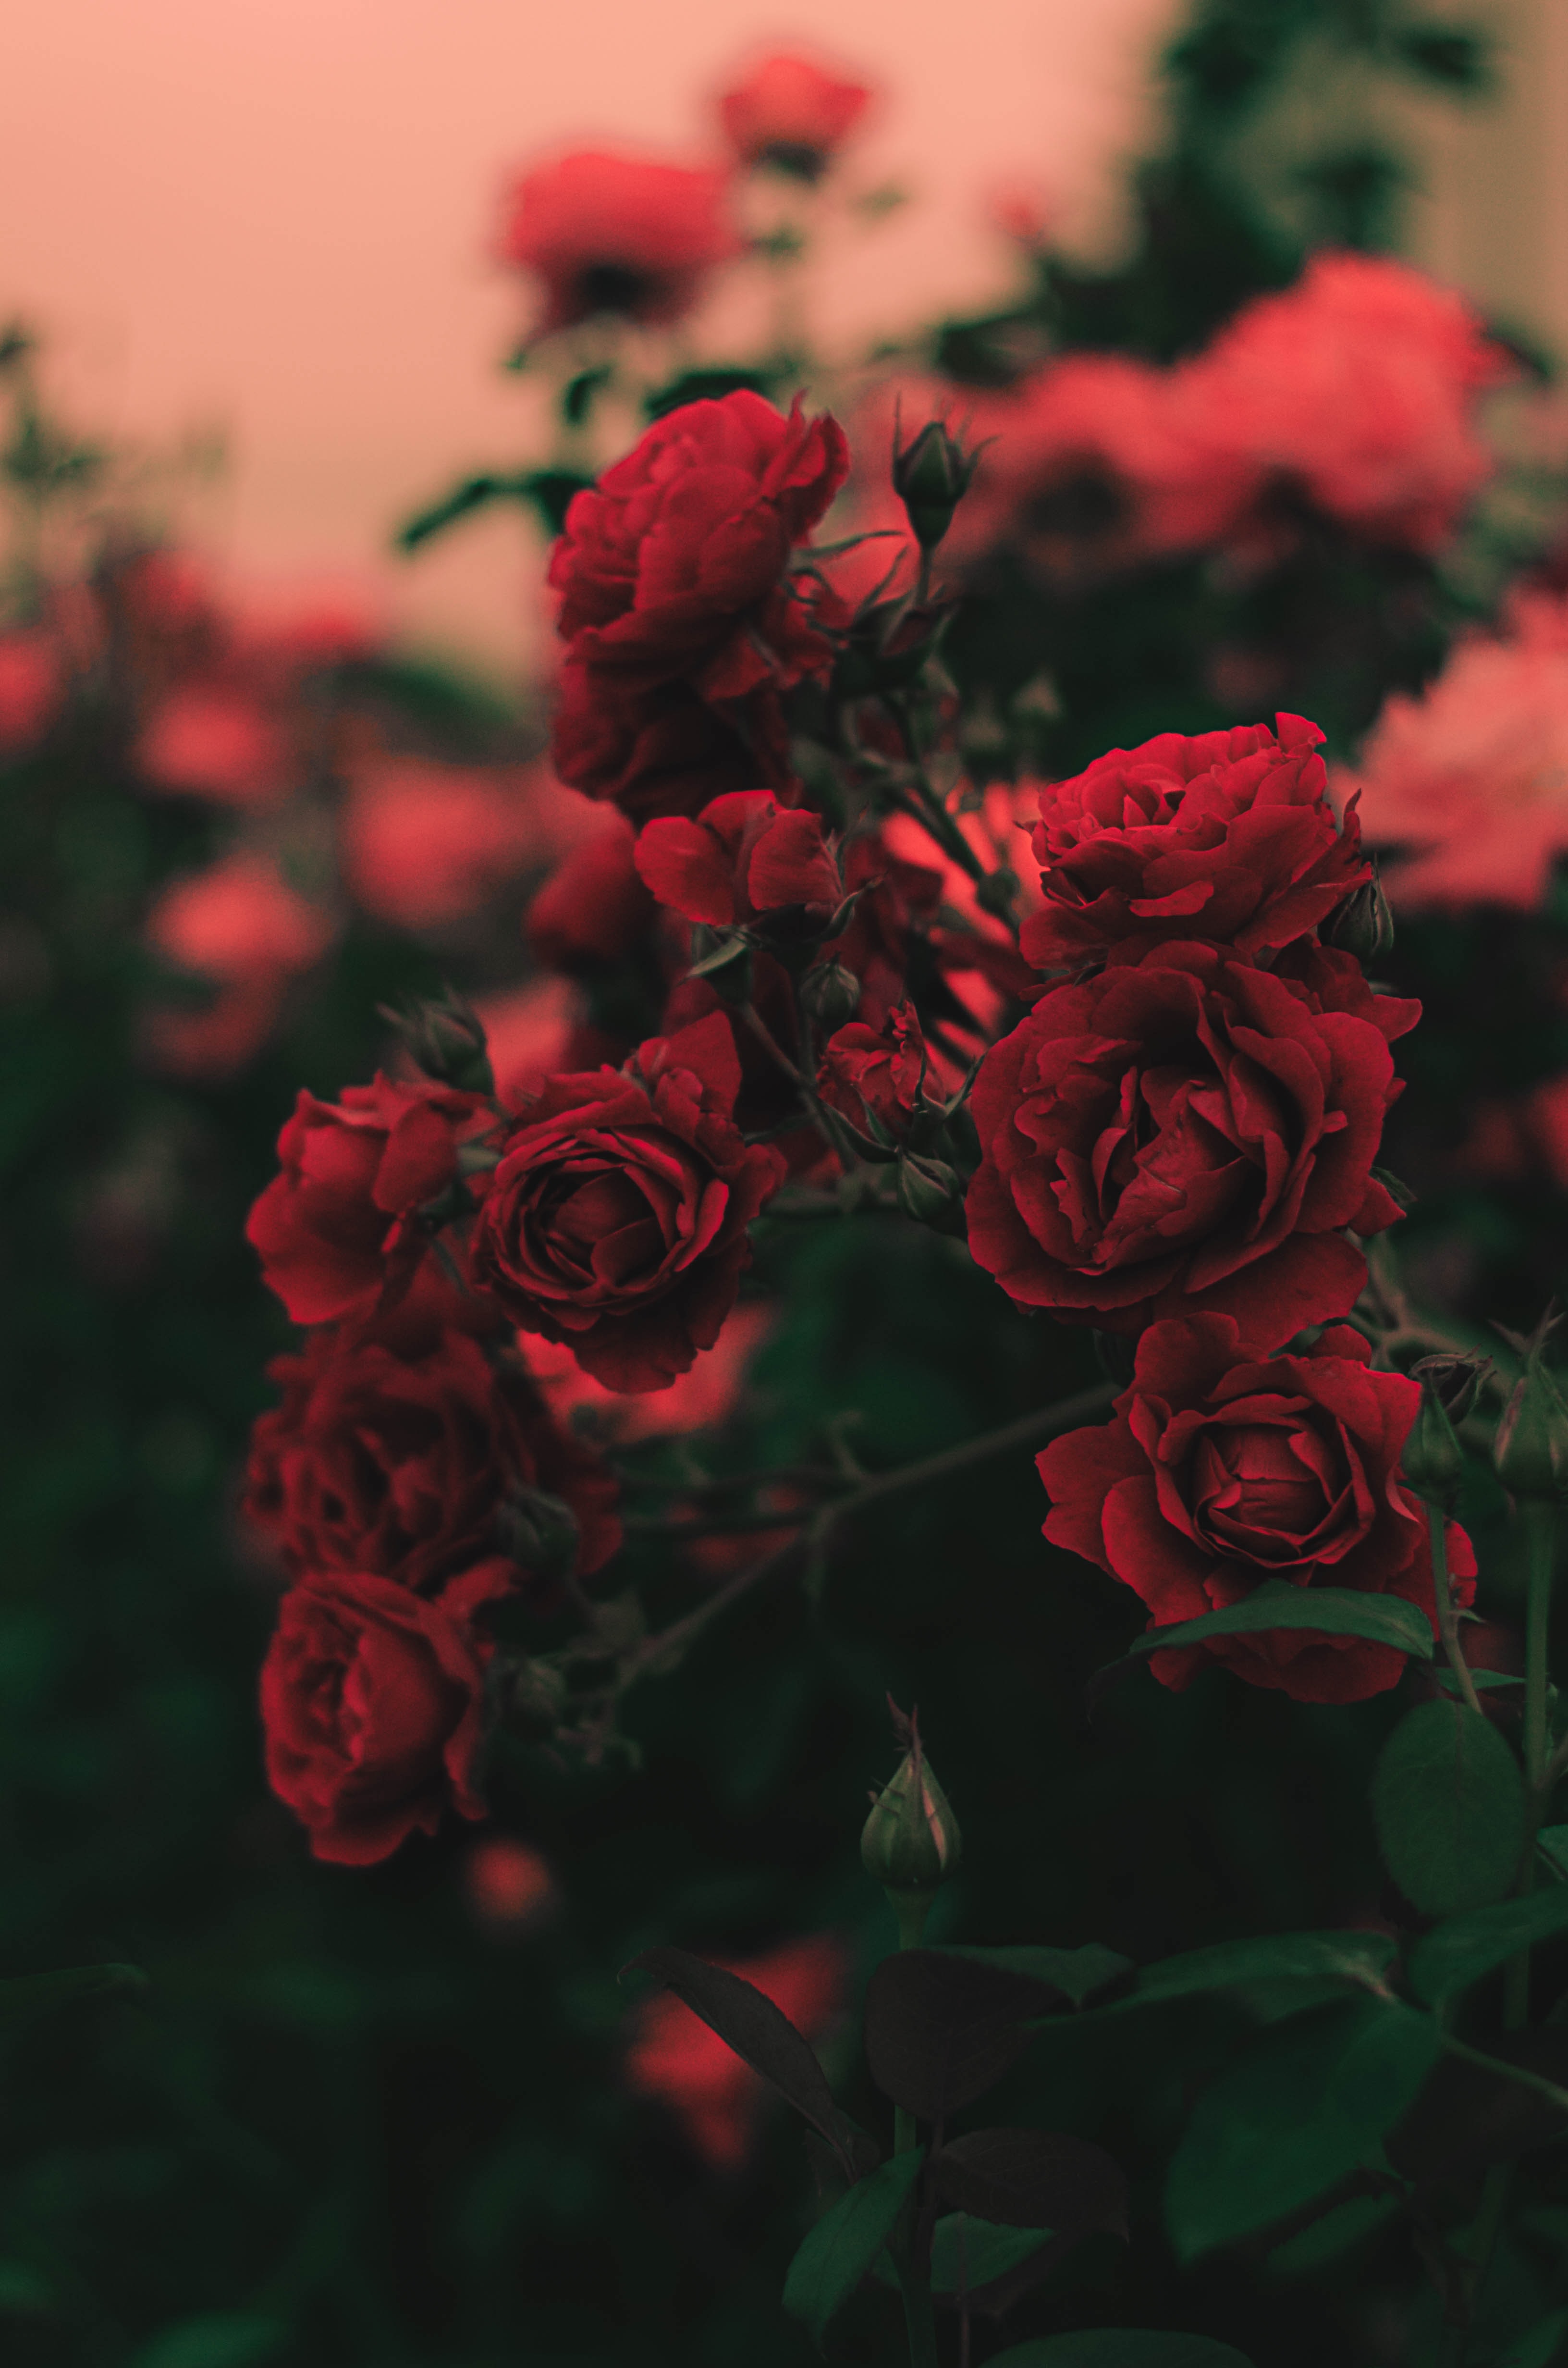 gül wallpaper,flower,red,garden roses,rose,plant